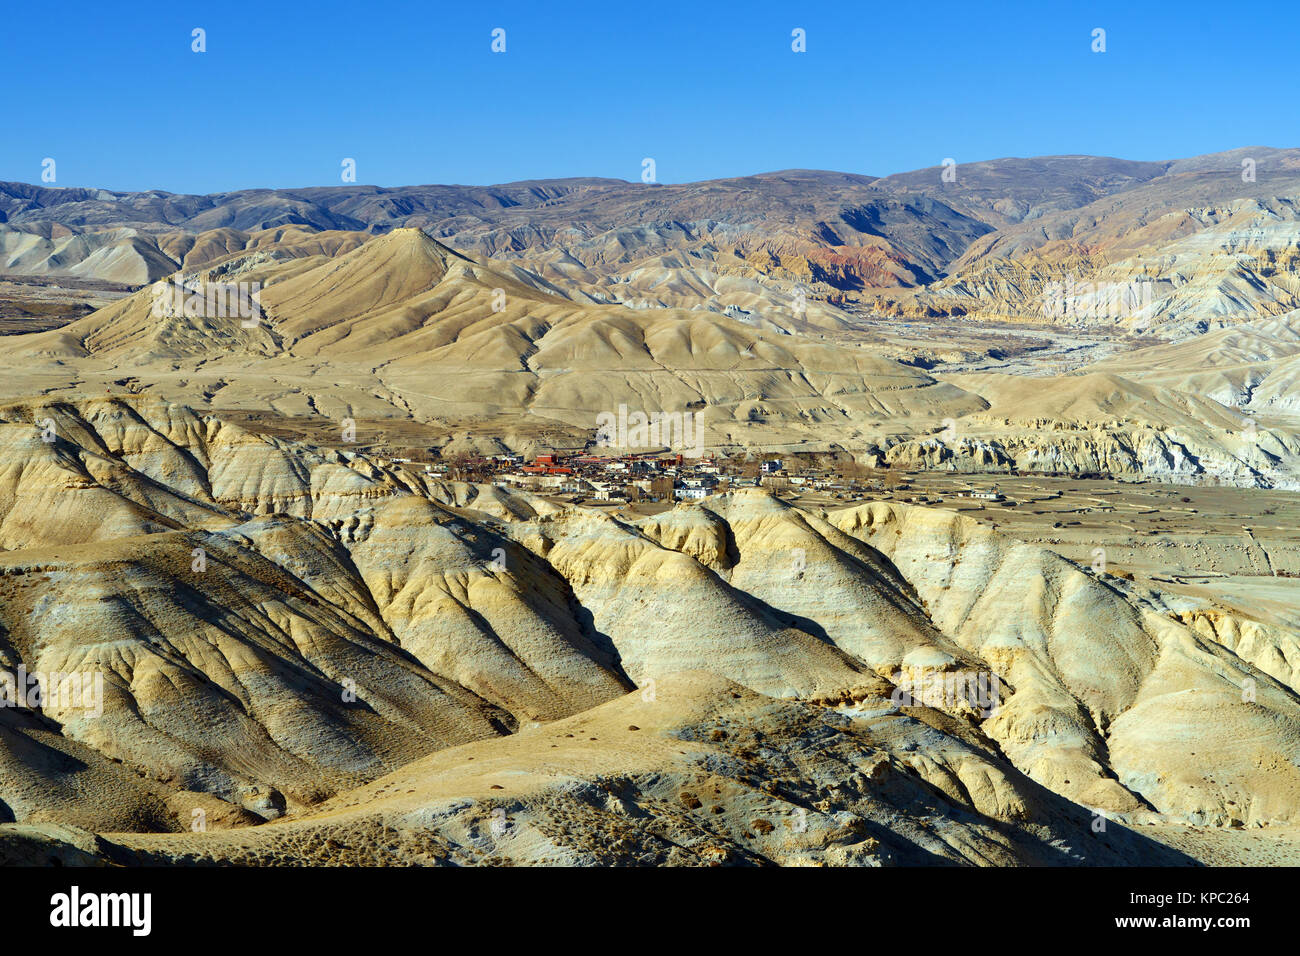 Lo Manthang, capitale del Mustang superiore, visto da una distanza nel mezzo di un arido paesaggio desertico. Foto Stock